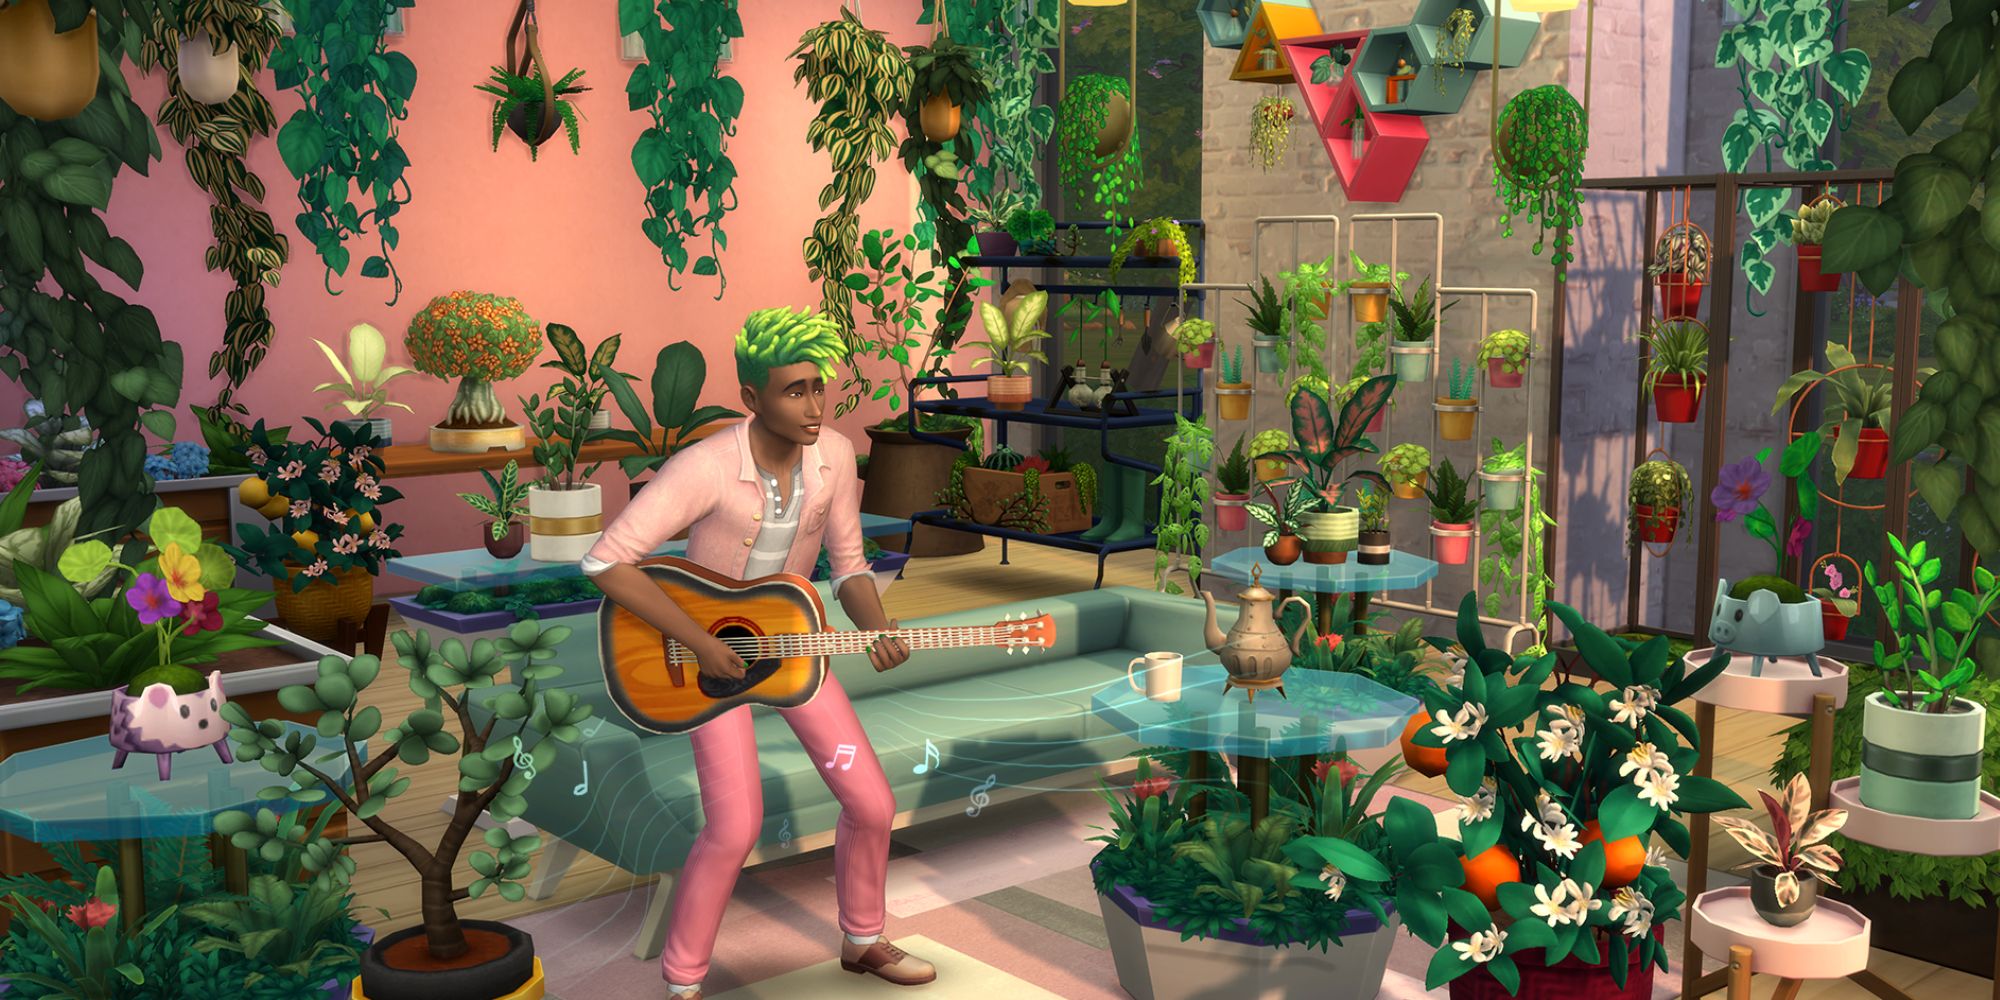 Sims 4 Blooming Rooms simulieren in einem Raum voller Pflanzen